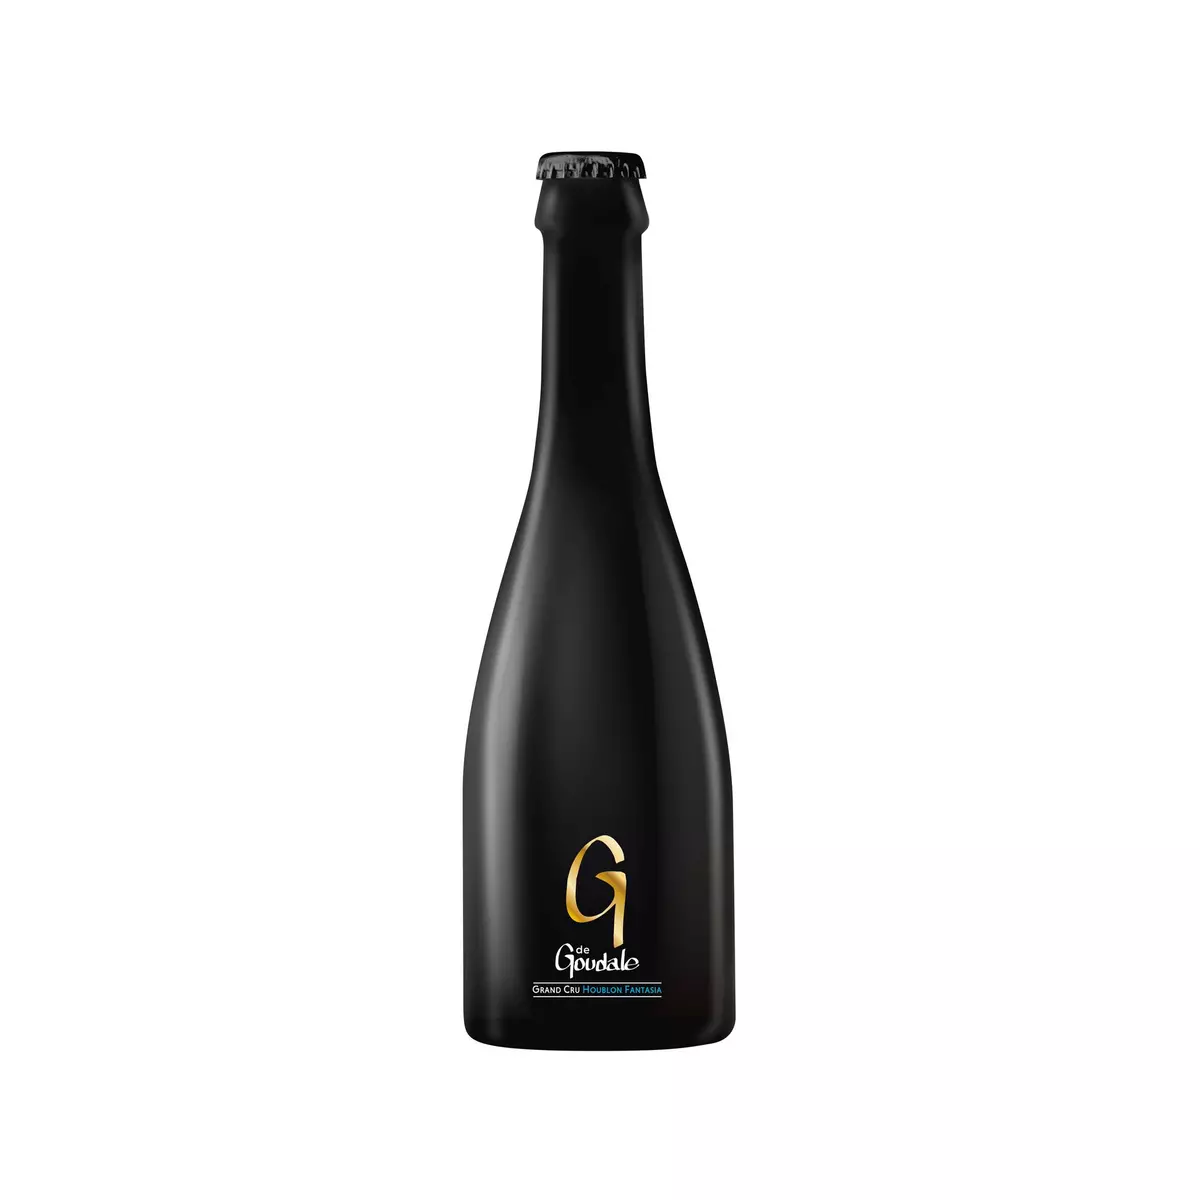 LA GOUDALE Bière blonde La G grand cru 7,9% bouteille 33cl